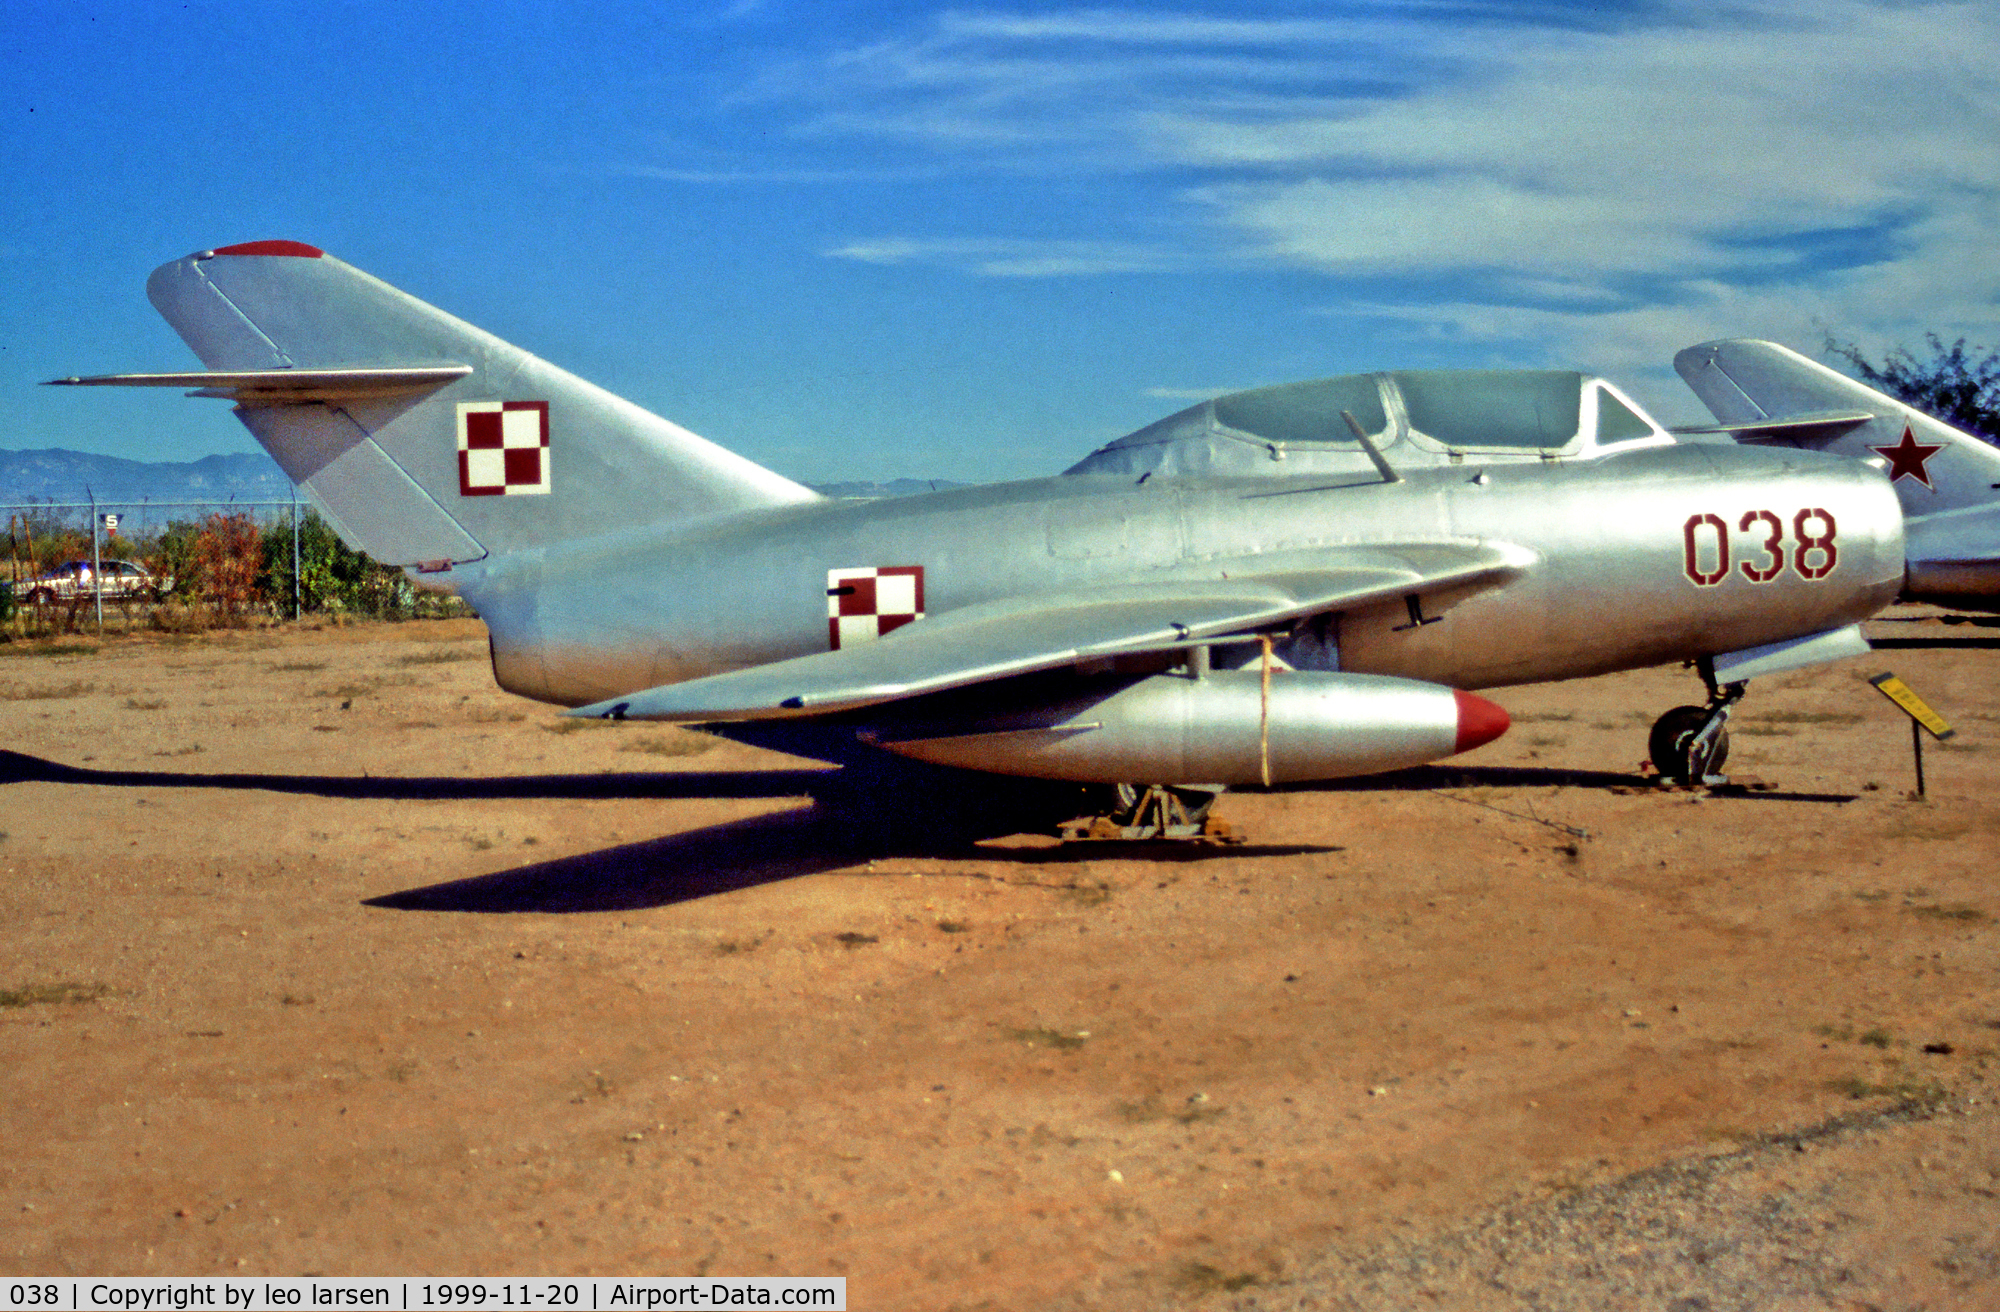 038, Mikoyan-Gurevich MiG-15UTI C/N 1A06038, Pima Air Museum 20.11.99